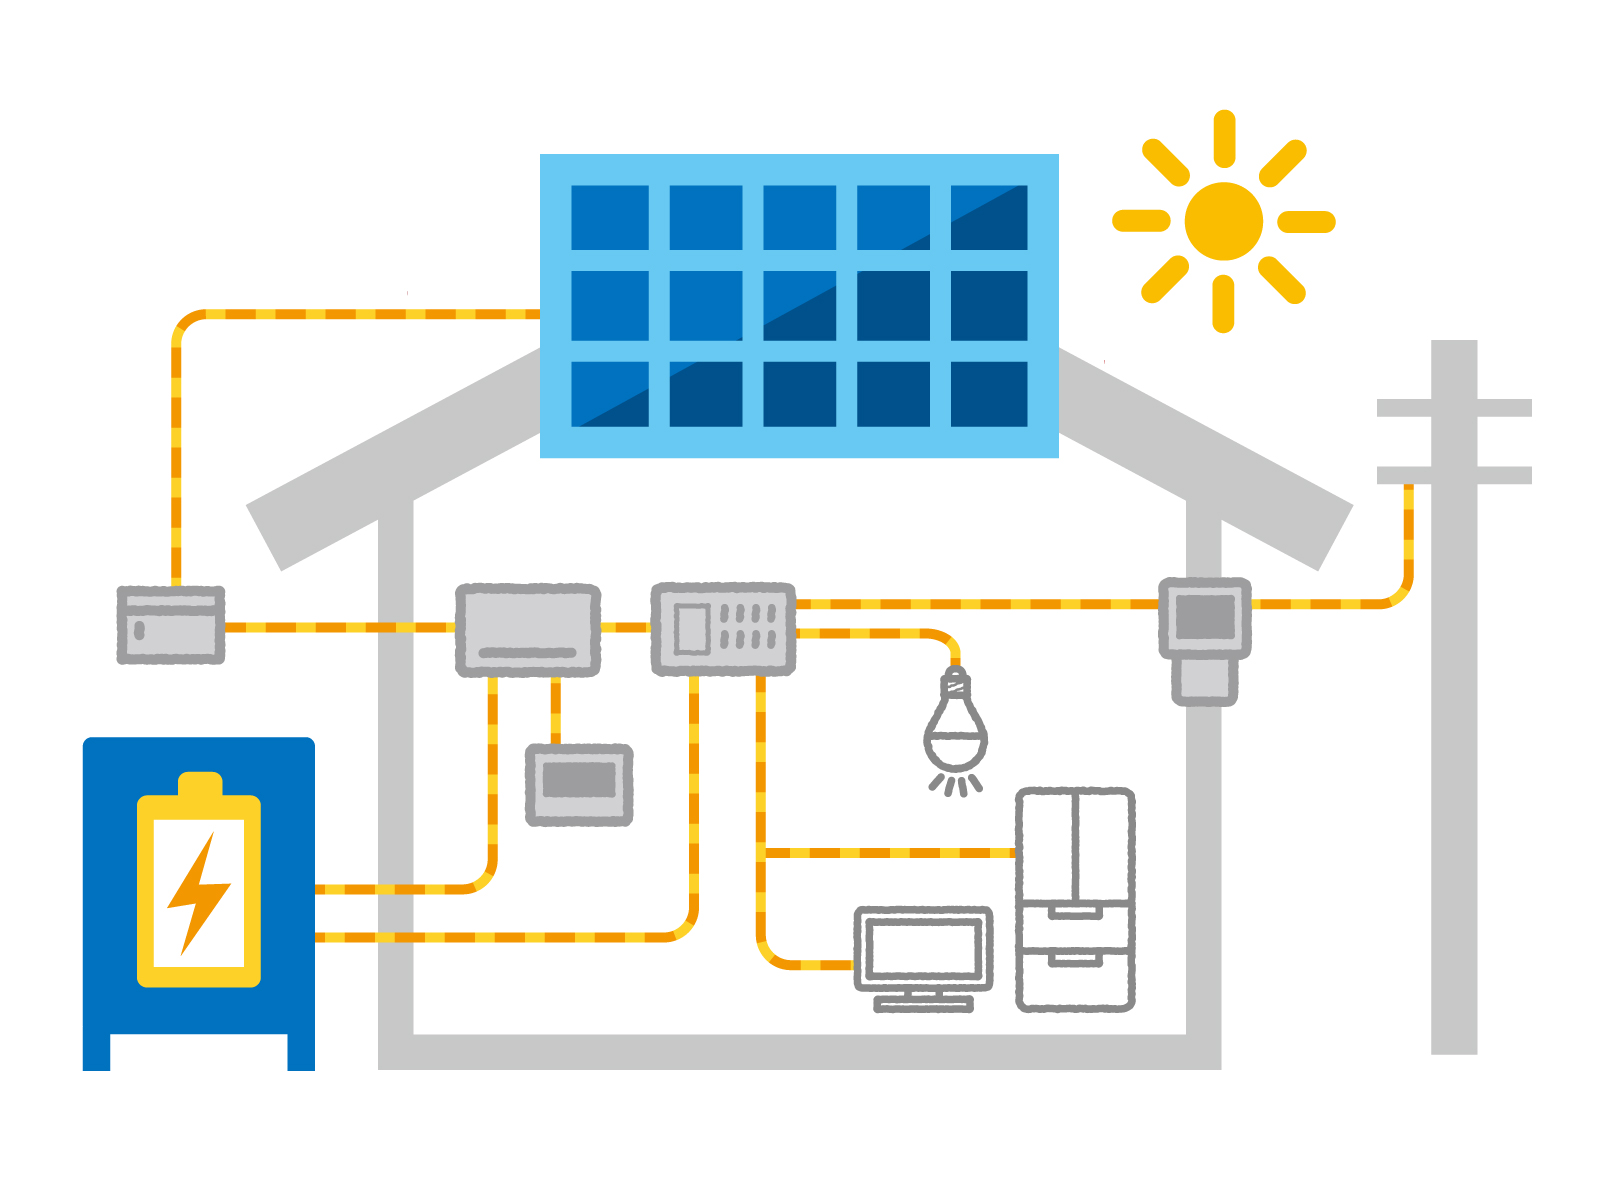 太陽光発電システムのメリット